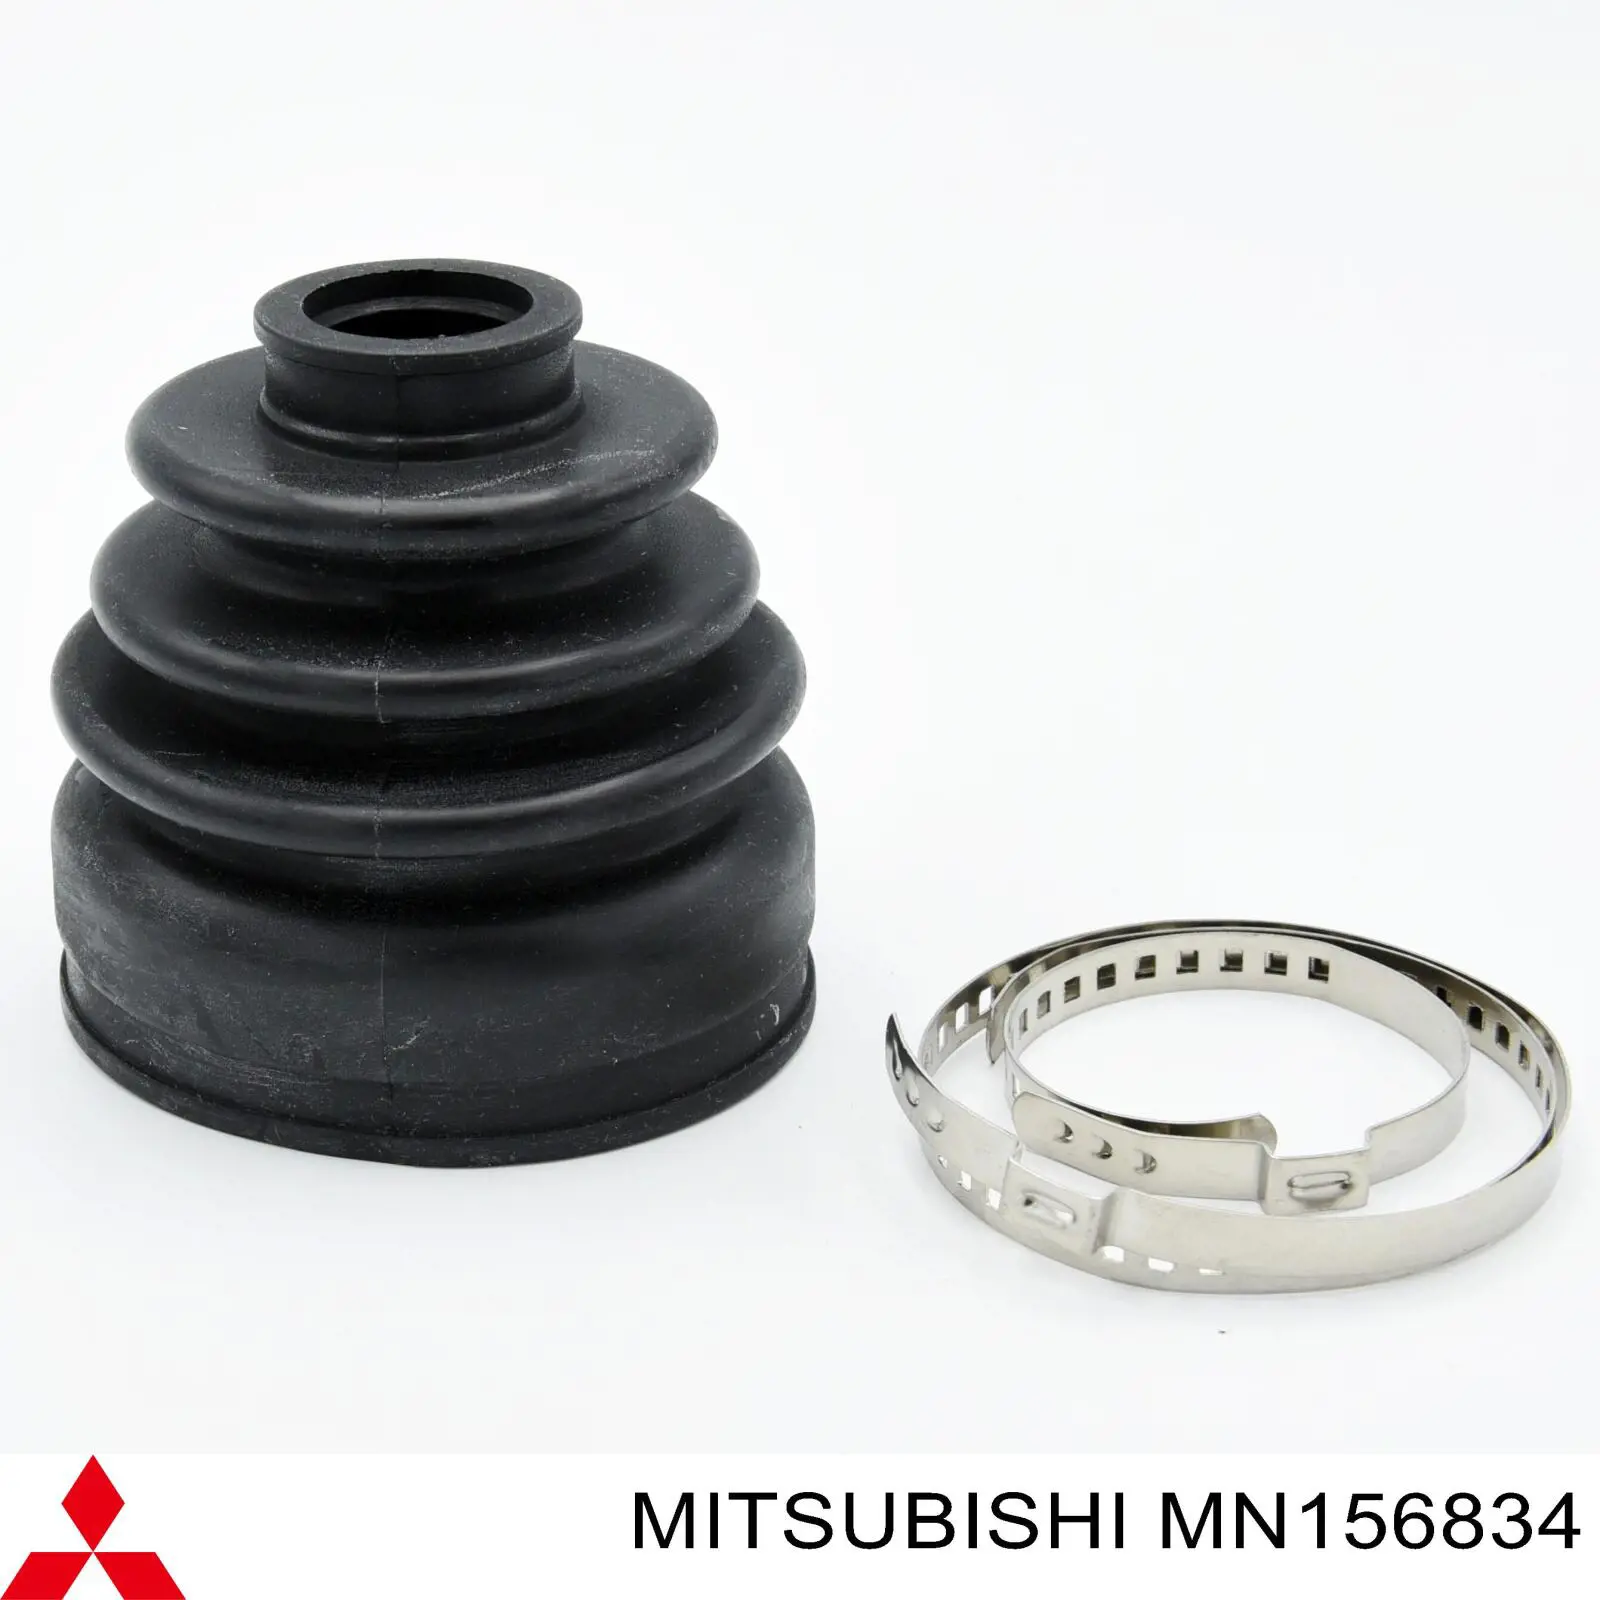 MN156834 Mitsubishi bota de proteção interna direita de junta homocinética do semieixo dianteiro